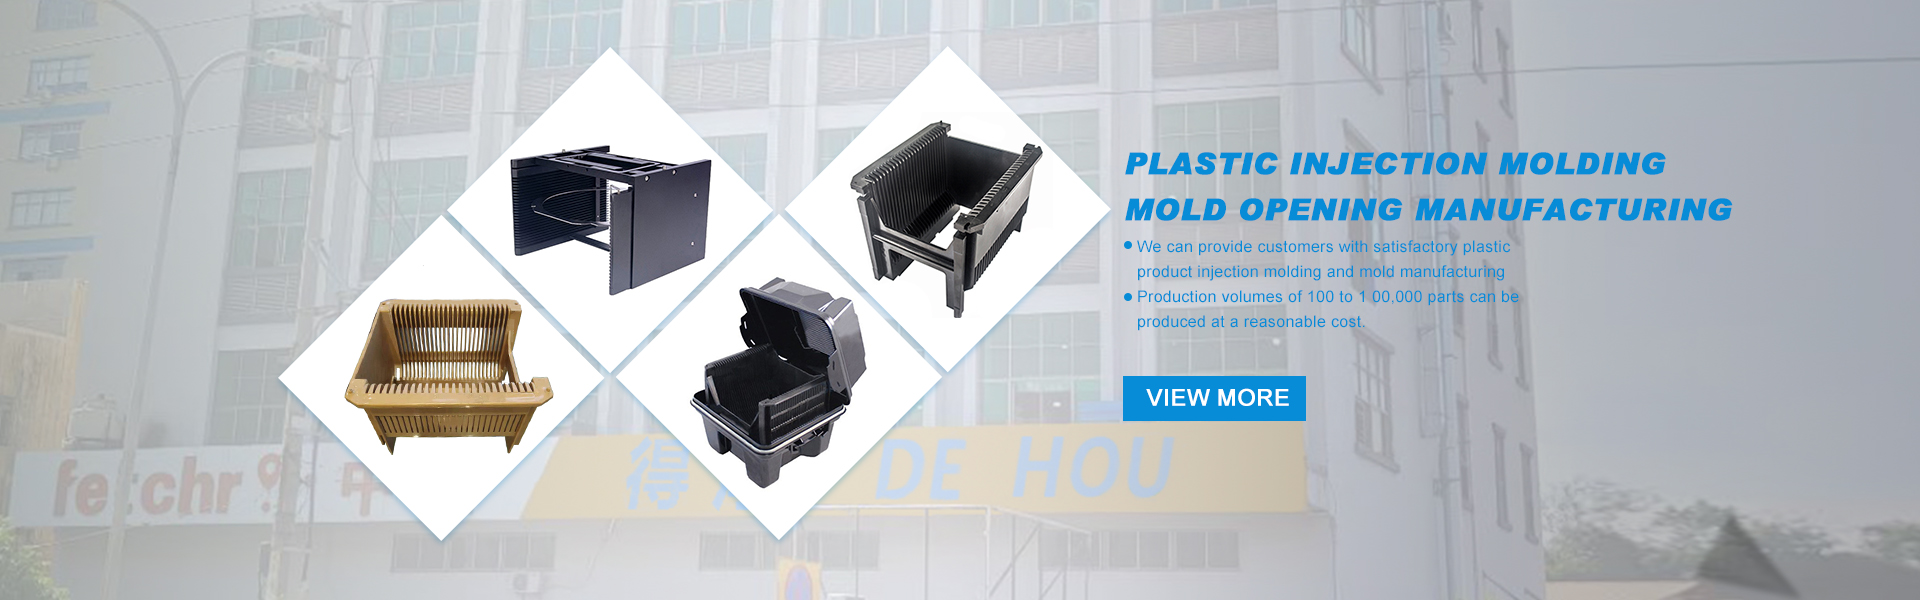 moldagem por injeção, fabricação de moldes, peek moldagem por injeção,Guangdong Dehou Special Plastic Products Co., Ltd